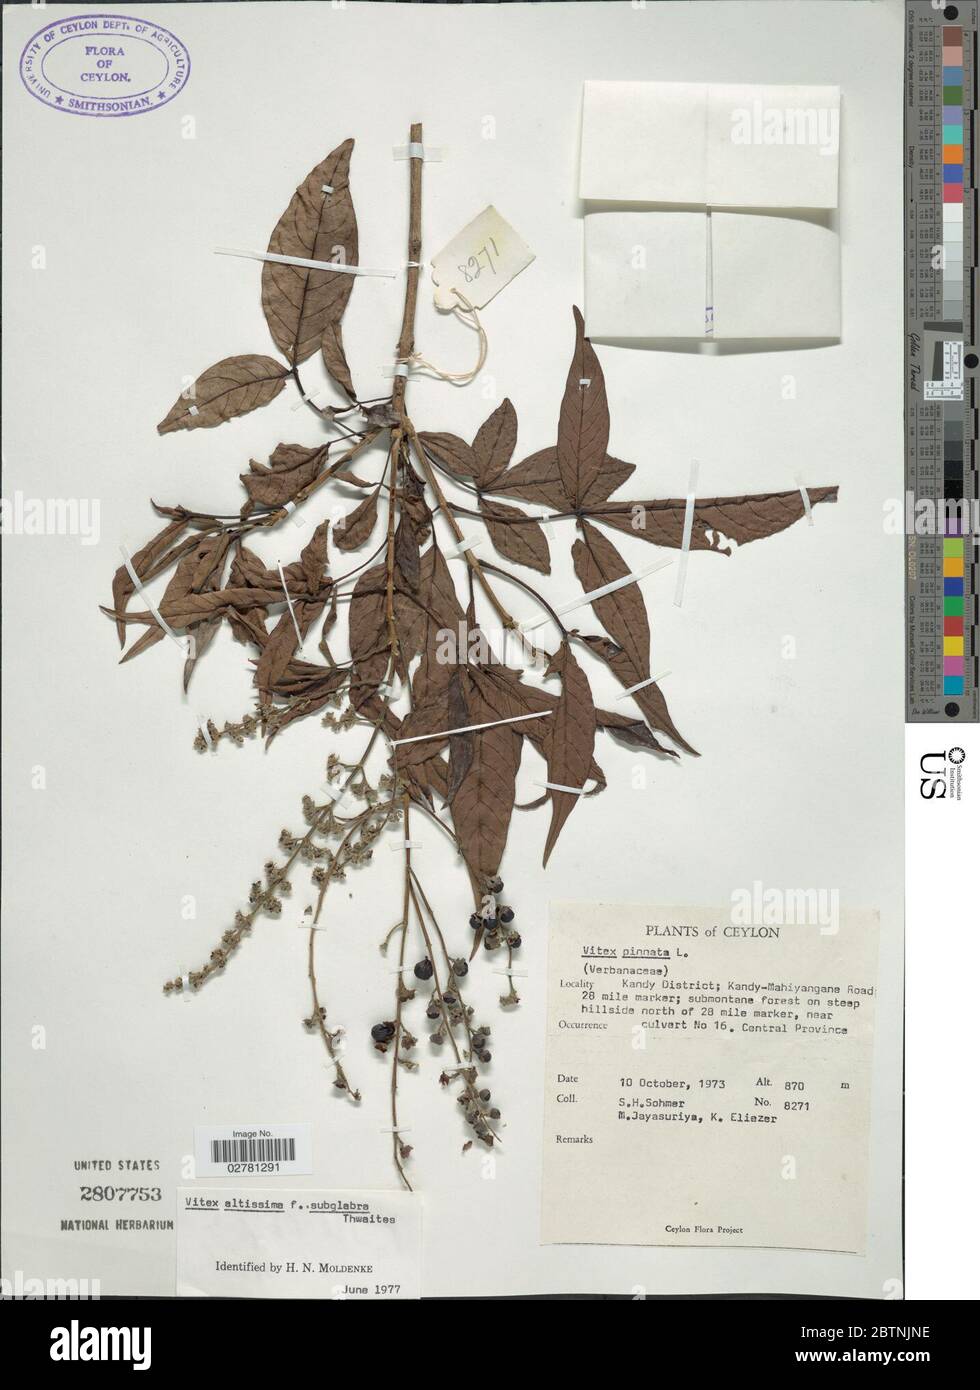 Vitex altissima f subglabra. Stock Photo